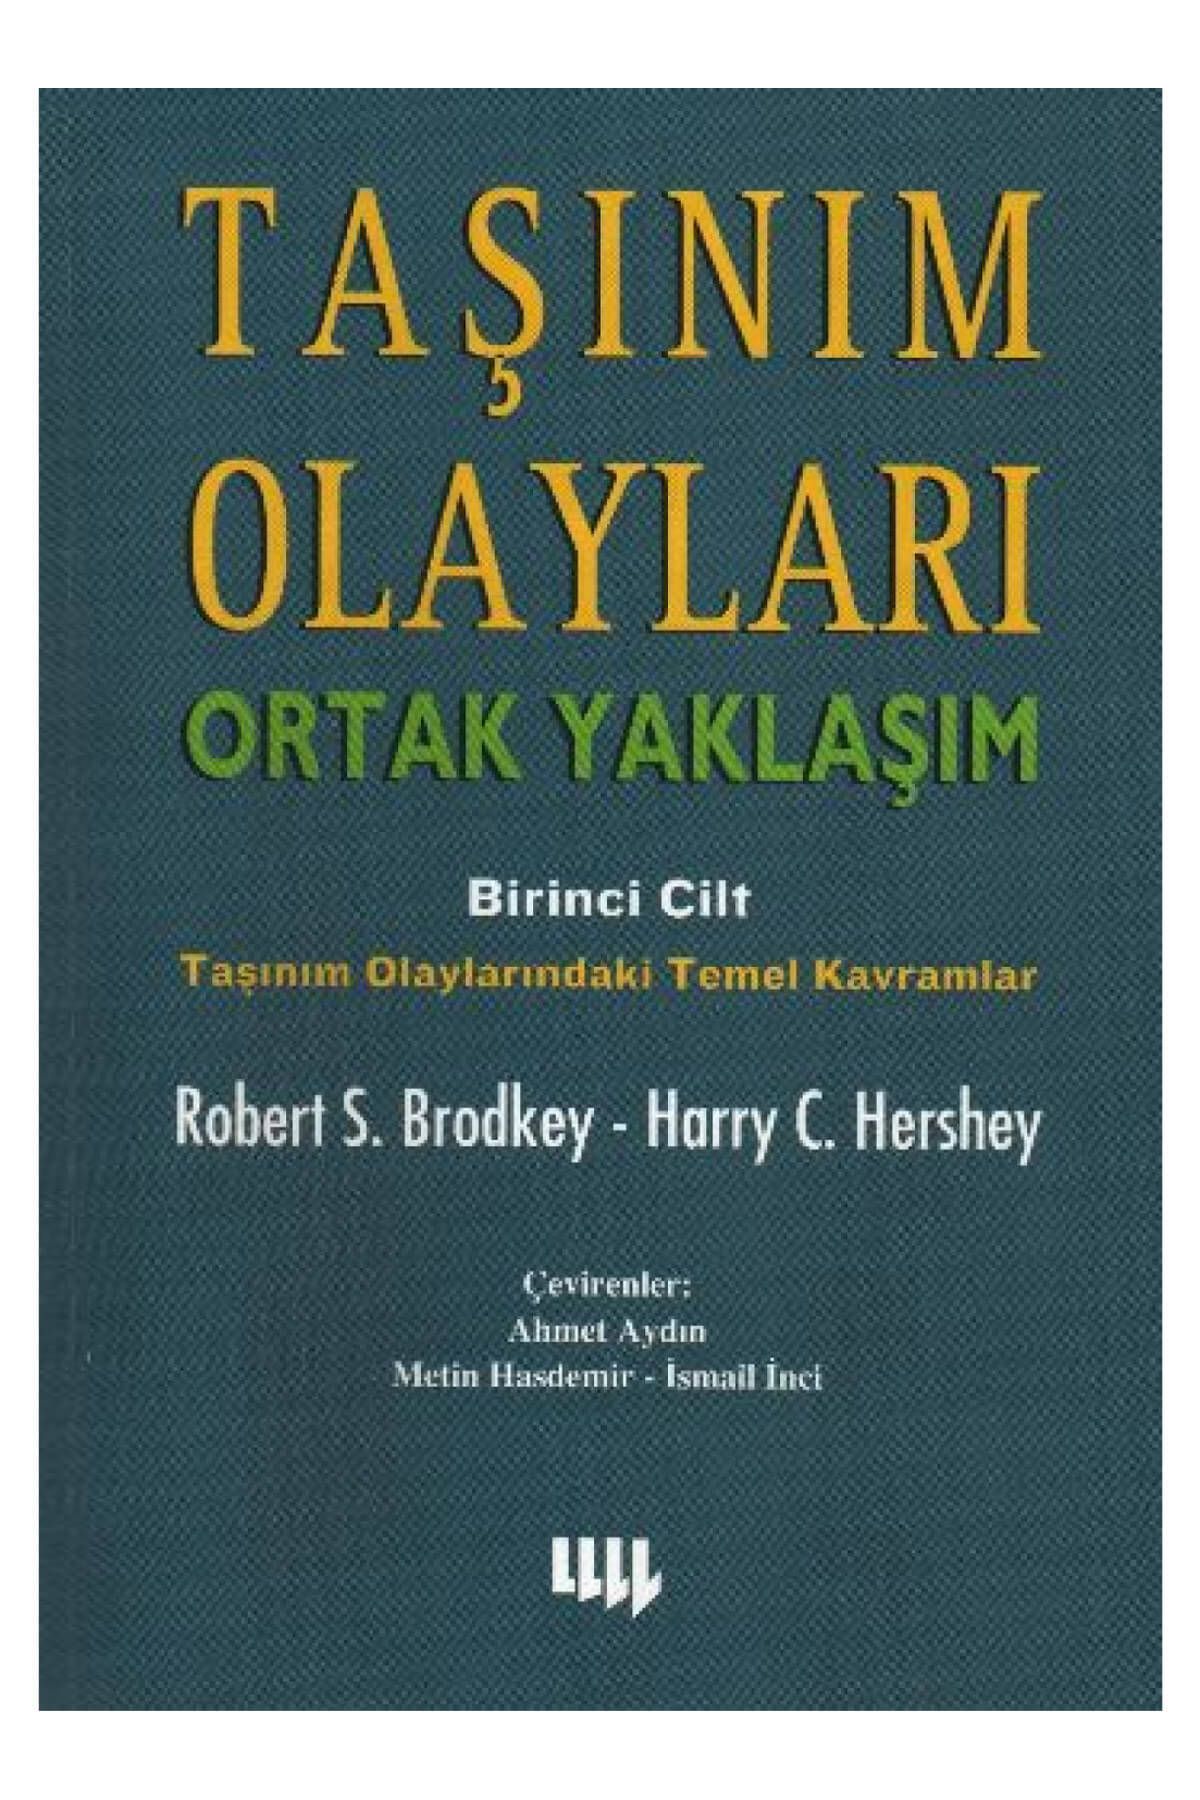 Literatür Yayınları Taşınım Olayları - Birinci Cilt / Ortak Yaklaşım - Harry C. Hershey,Robert S. Brodkey